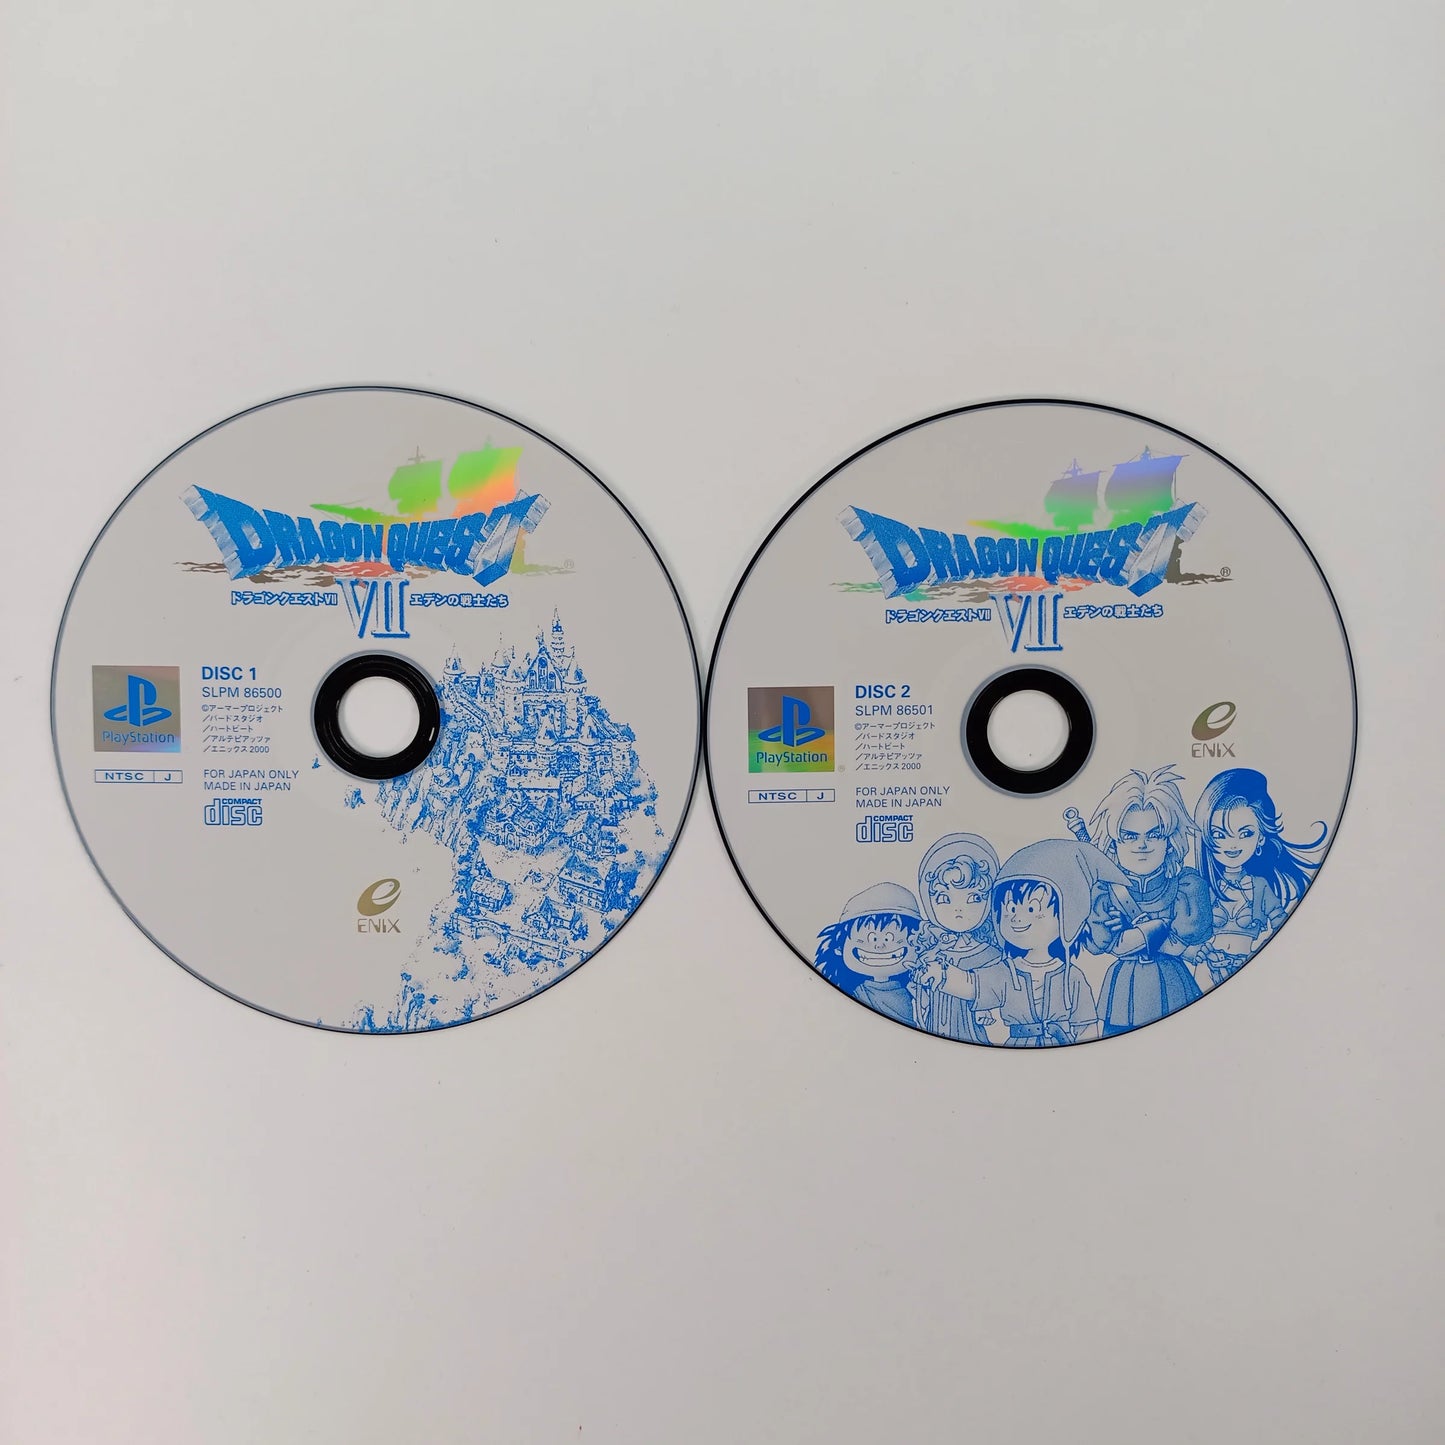 Dragon Quest VII : La Quête des vestiges du monde